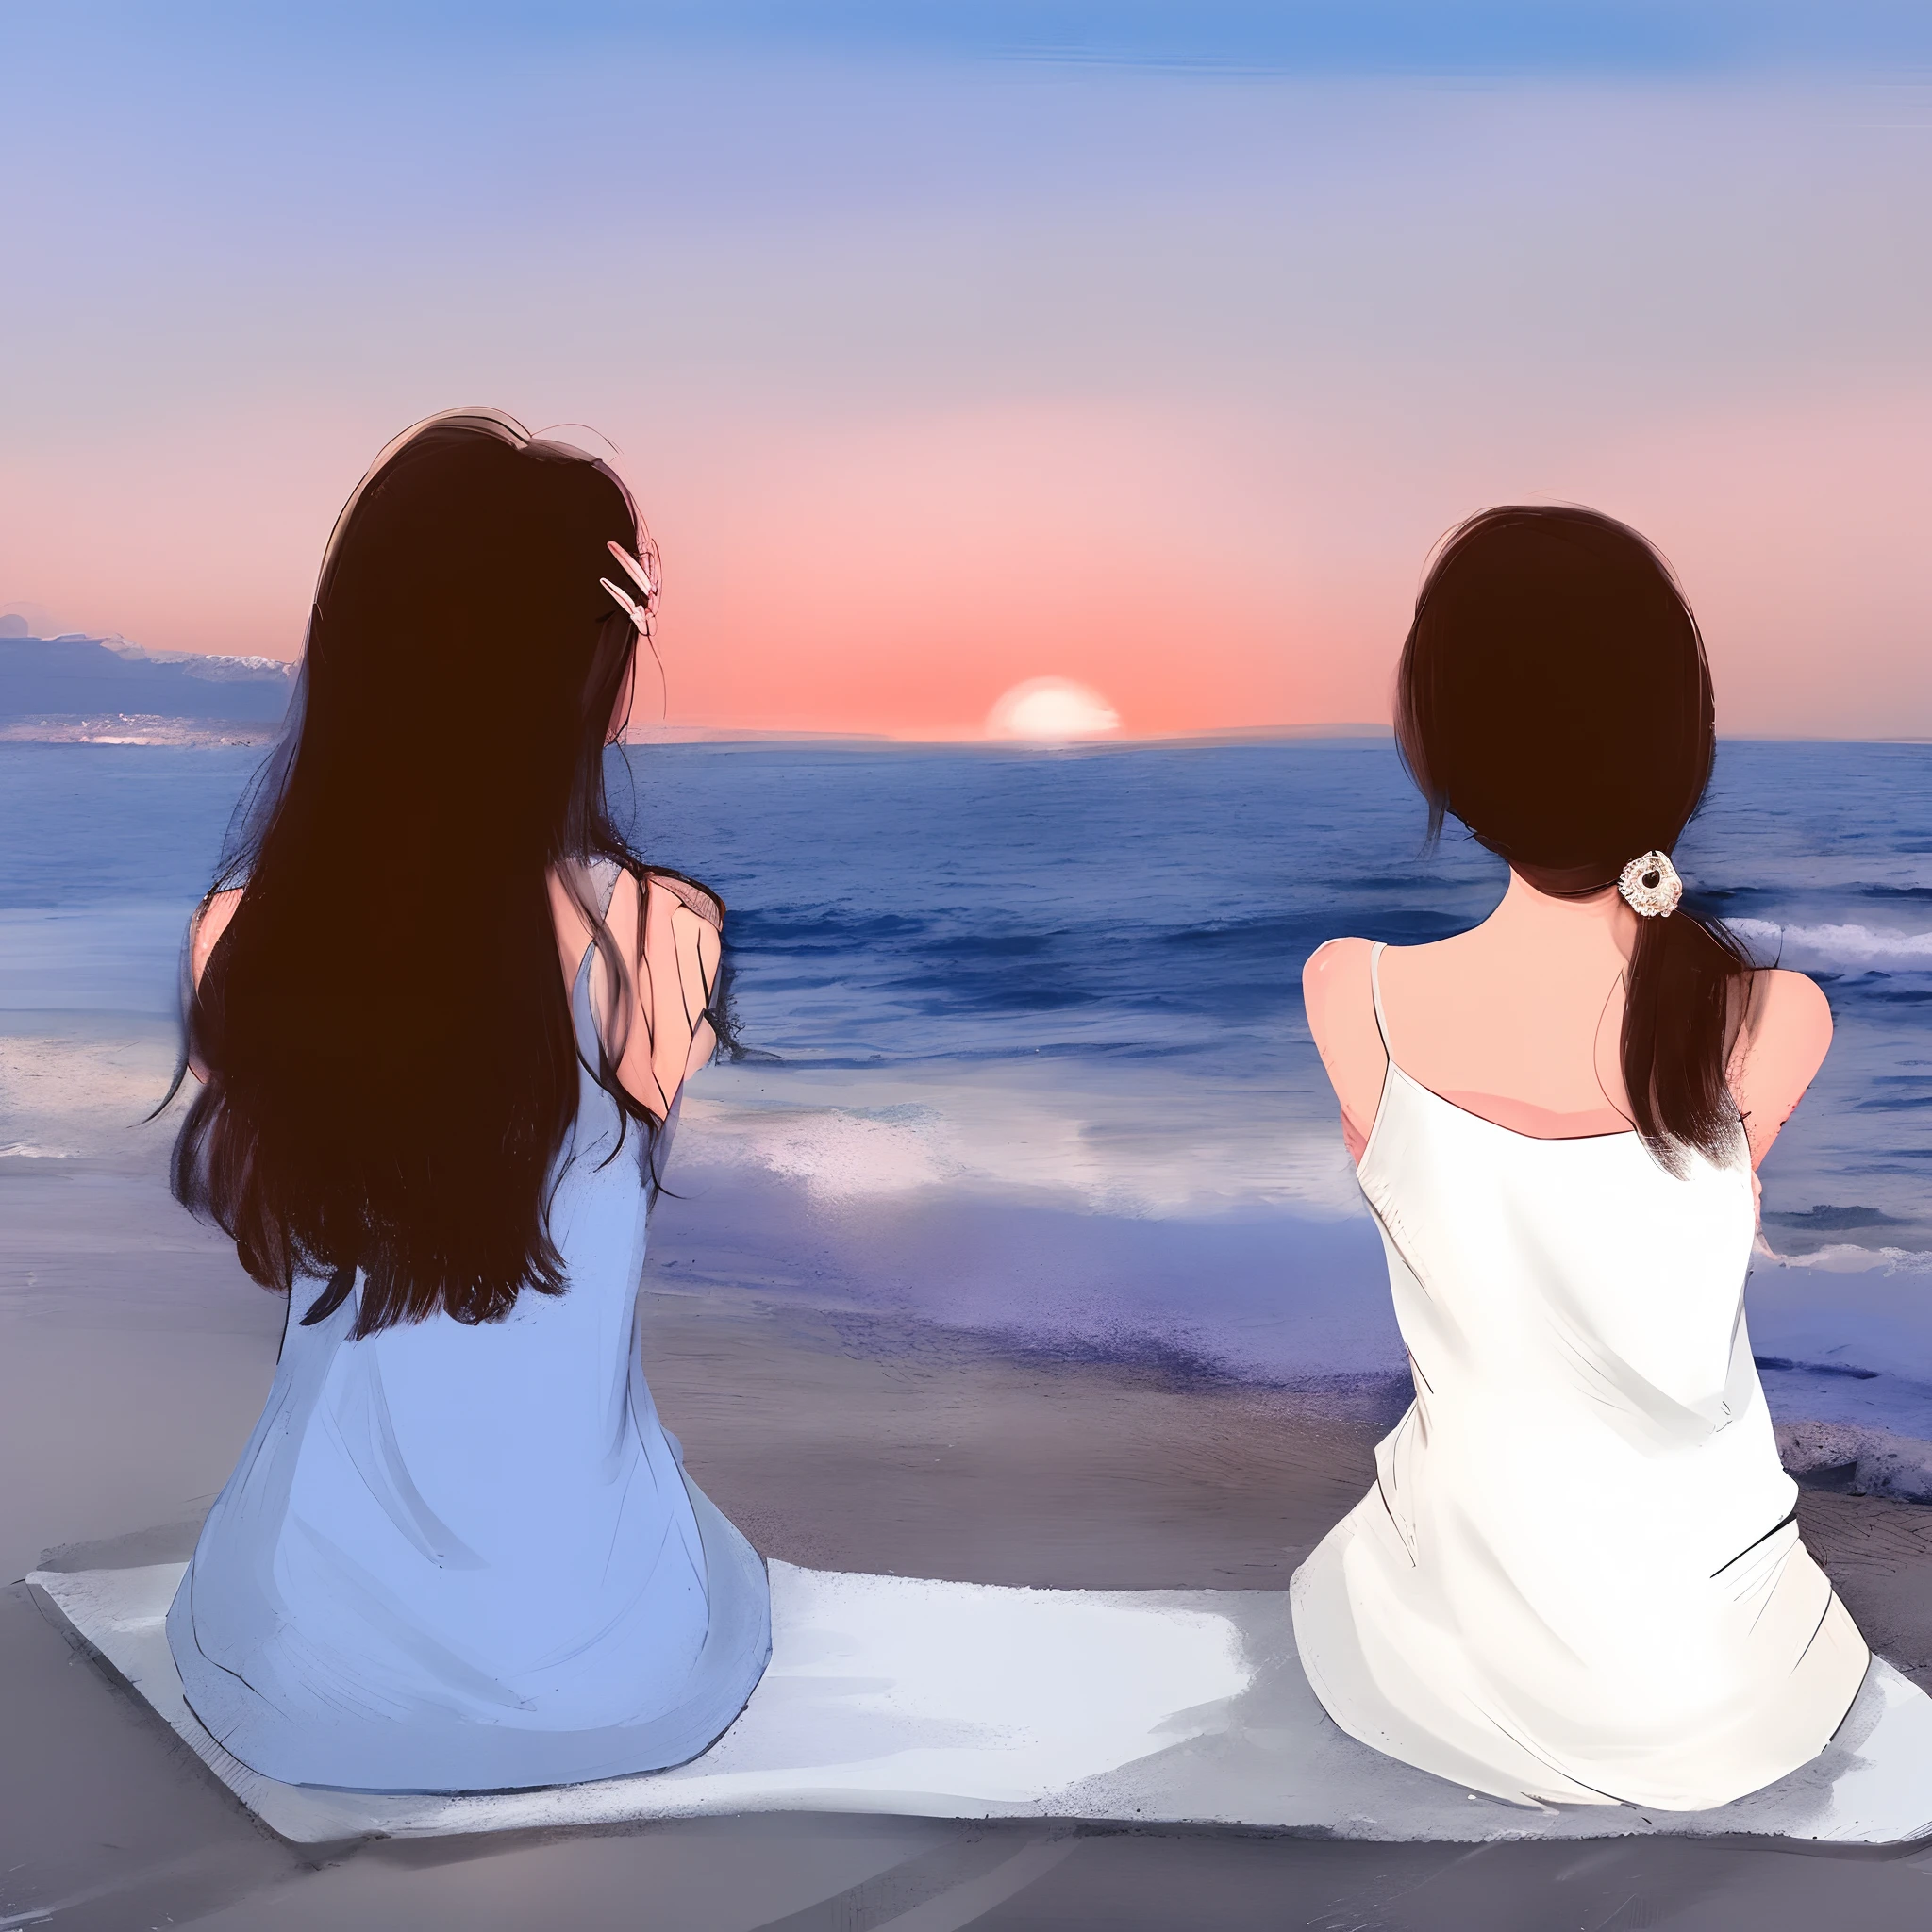 Two women sitting on the beach Assistindo o pôr do sol, linda pintura de amigos, Com o pôr-do-sol, Assistindo o pôr do sol, assistindo o pôr do sol. mangá japonês, na praia ao pôr do sol, na praia em um pôr do sol, Assistindo o pôr do sol, Com o pôr-do-sol, sentado na praia, duas meninas, na praia ao pôr do sol, imagem de arte digital, na praia durante o pôr do sol